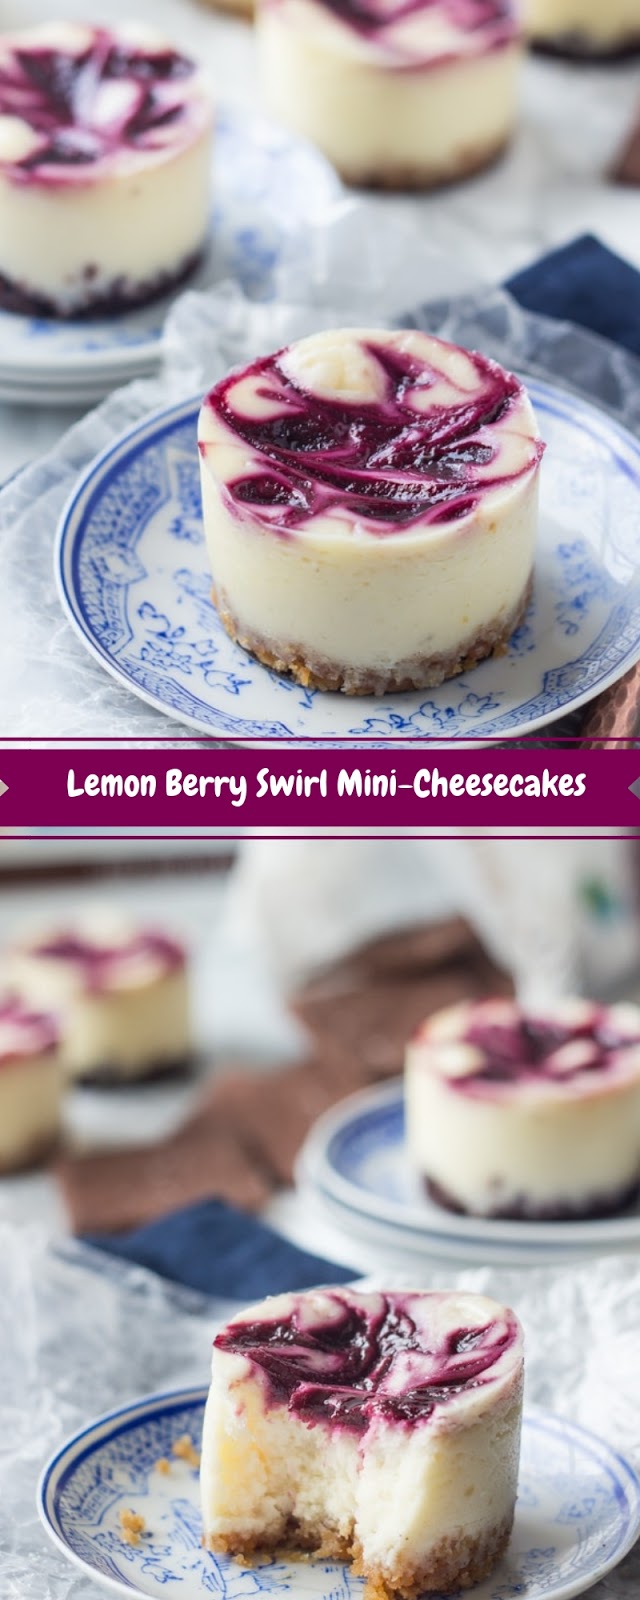 Lemon Berry Swirl Mini-Cheesecakes 